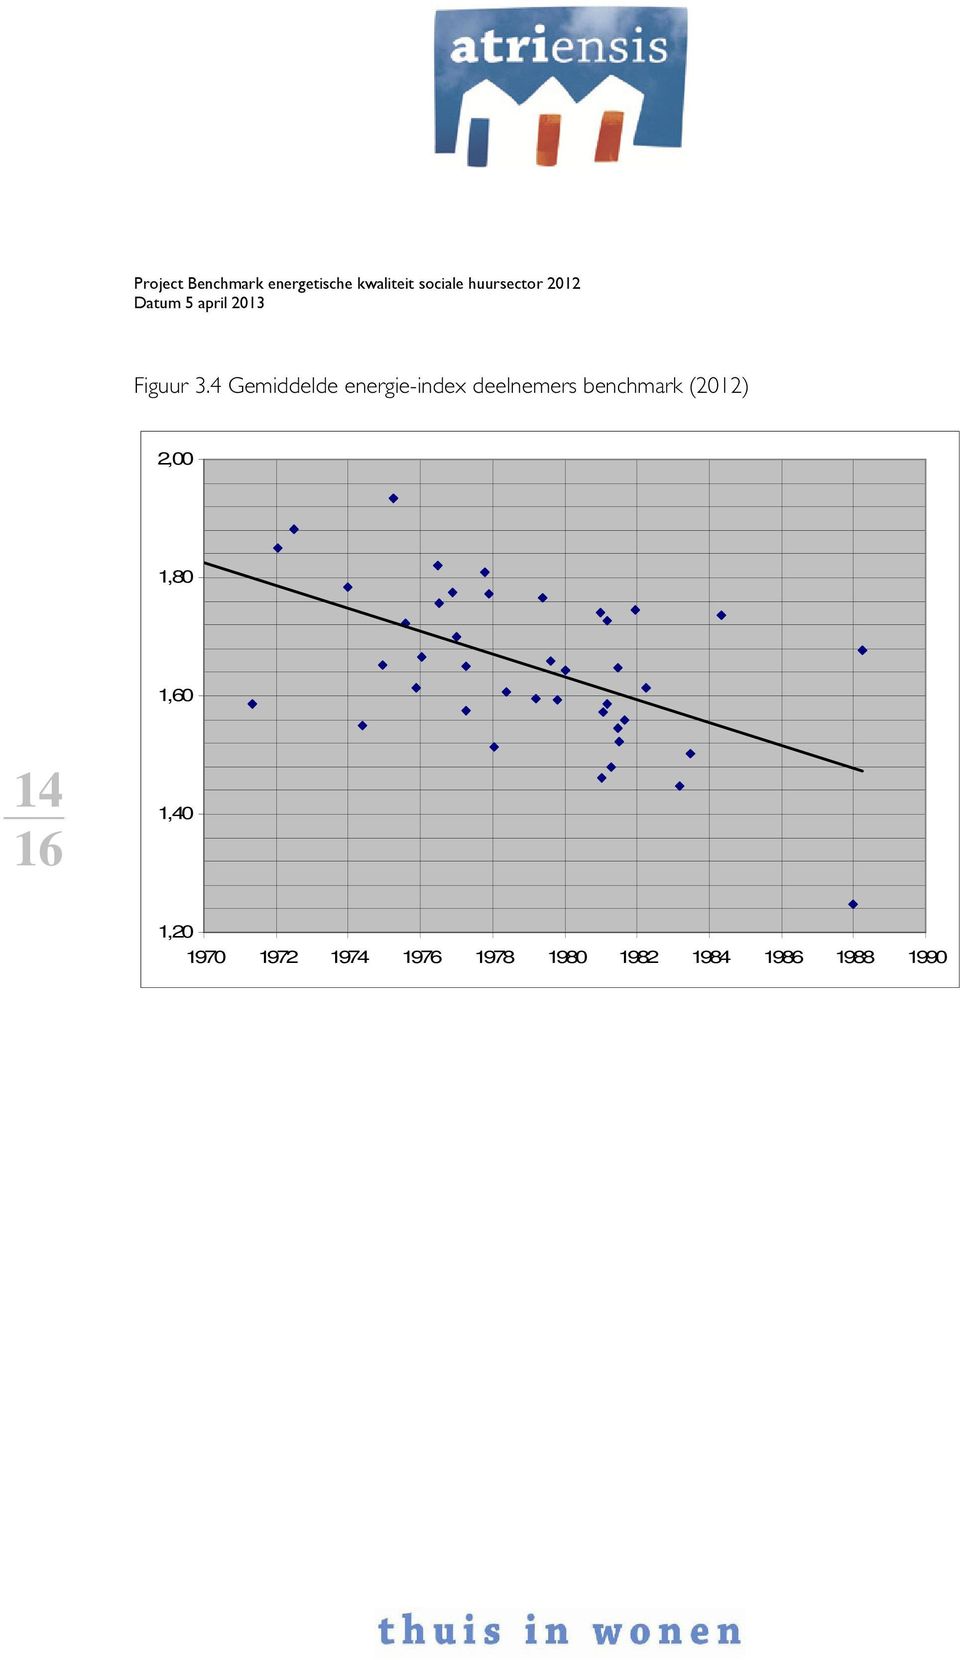 deelnemers benchmark (2012) 2,00